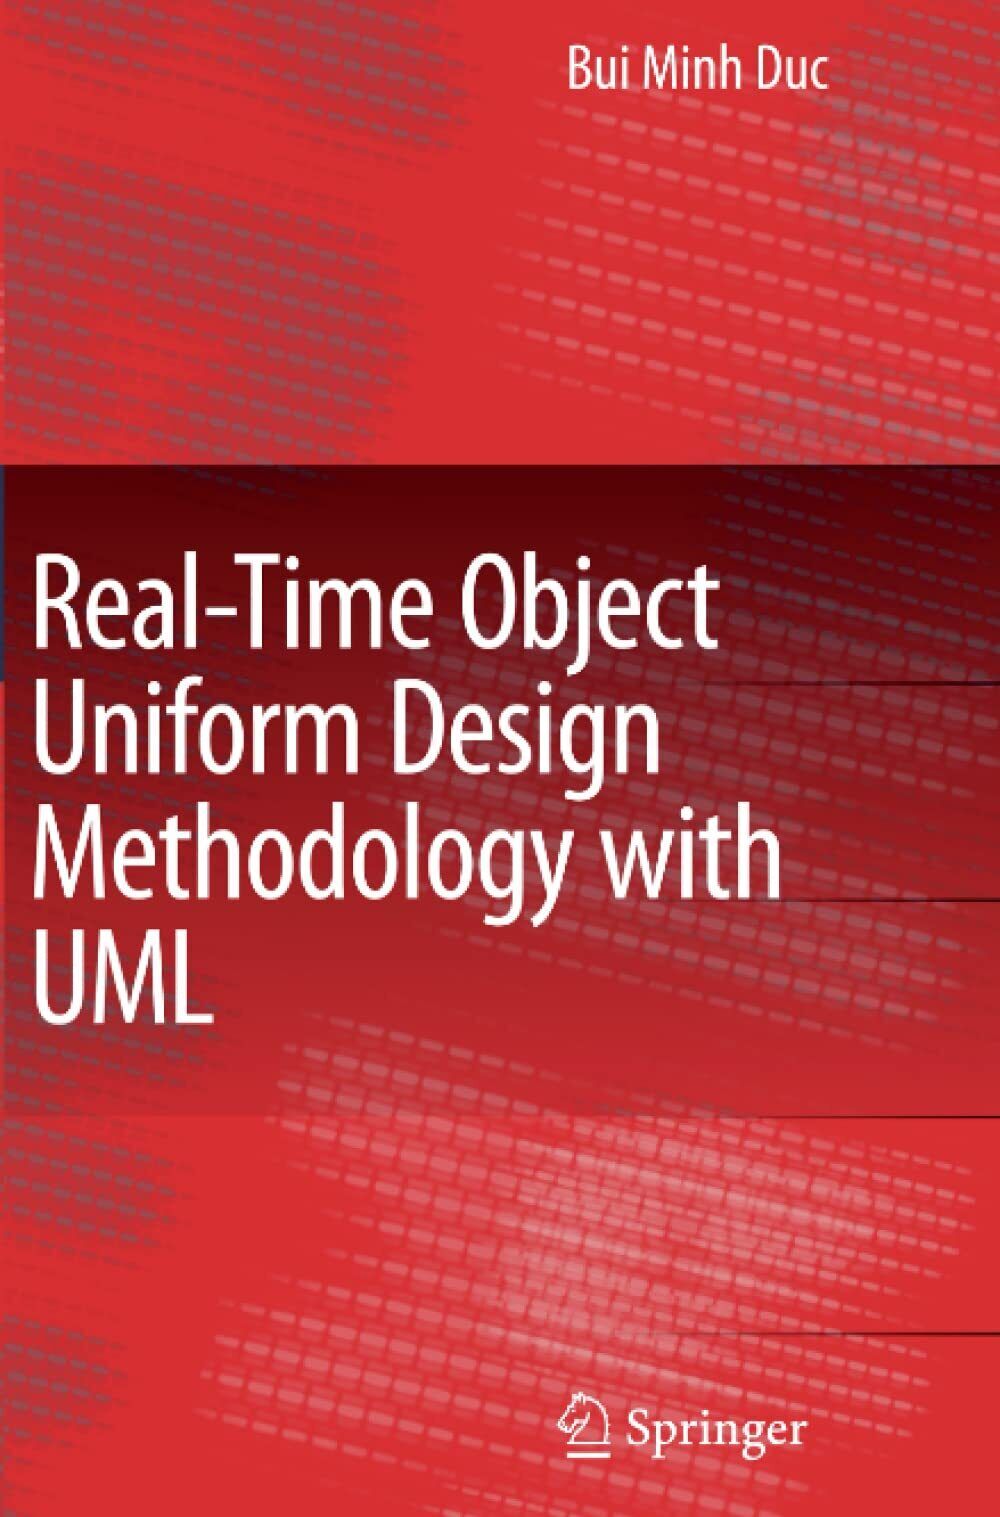 Real-Time Object Uniform Design Methodology with UML - Springer, 2010